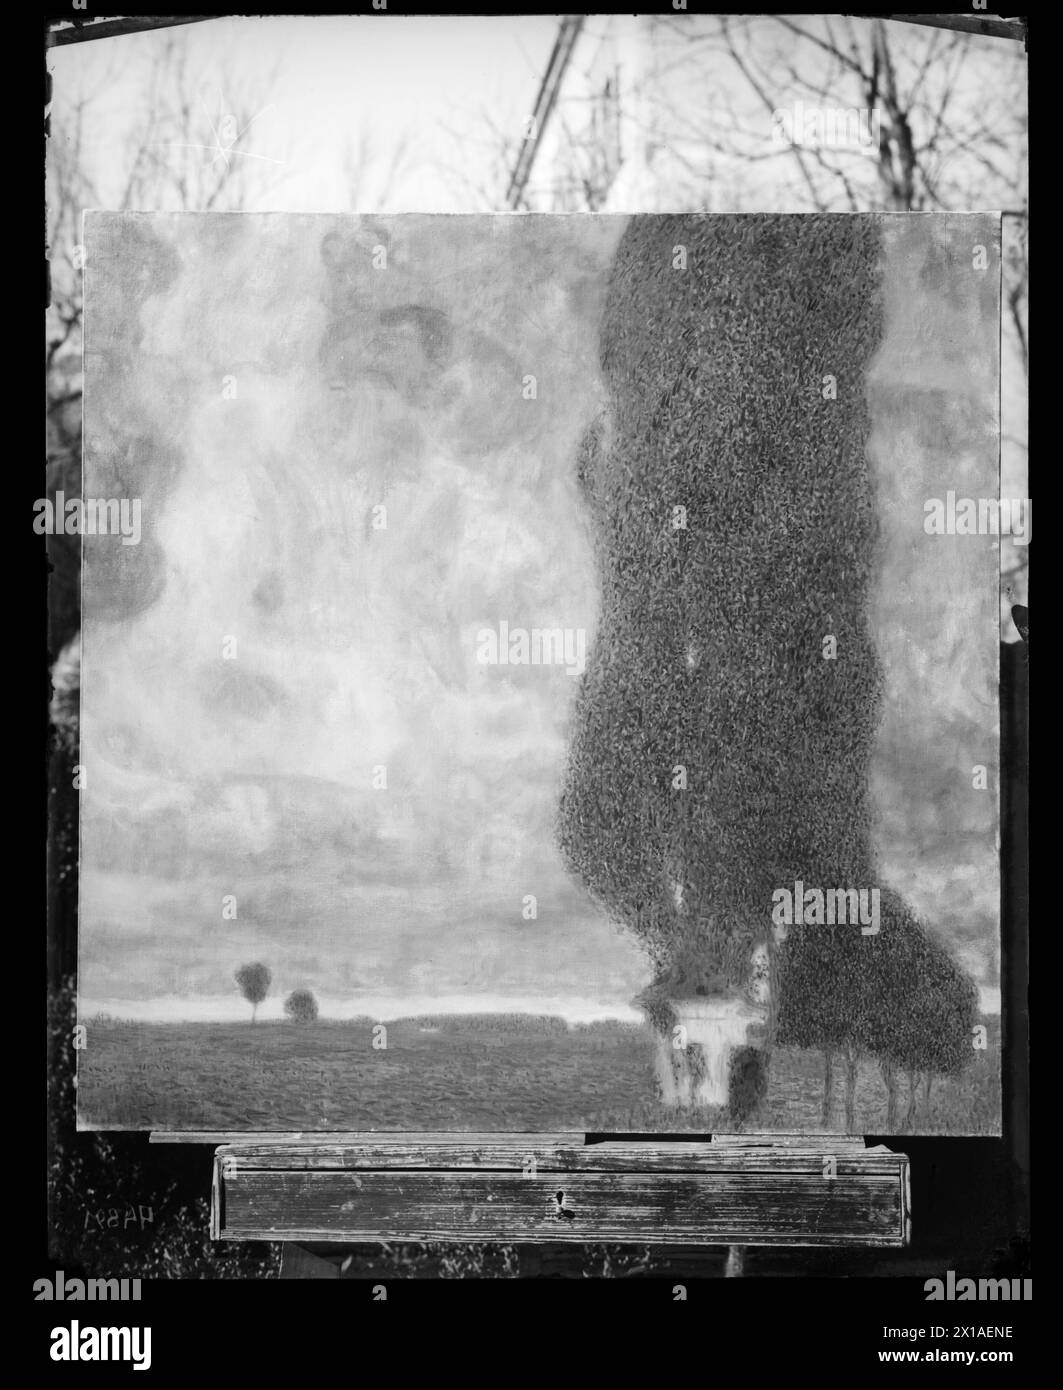 Der Anlegeplatz Cottonwood II (ansteigender Sturm), Landschaft mit Pappel in Litzlberg am Attersee. Gemälde von Gustav Klimt. Fotoreproduktion von Maurice Naehr, 1903 - 19030101 PD2884 - Rechteinfo: Rights Managed (RM) Stockfoto